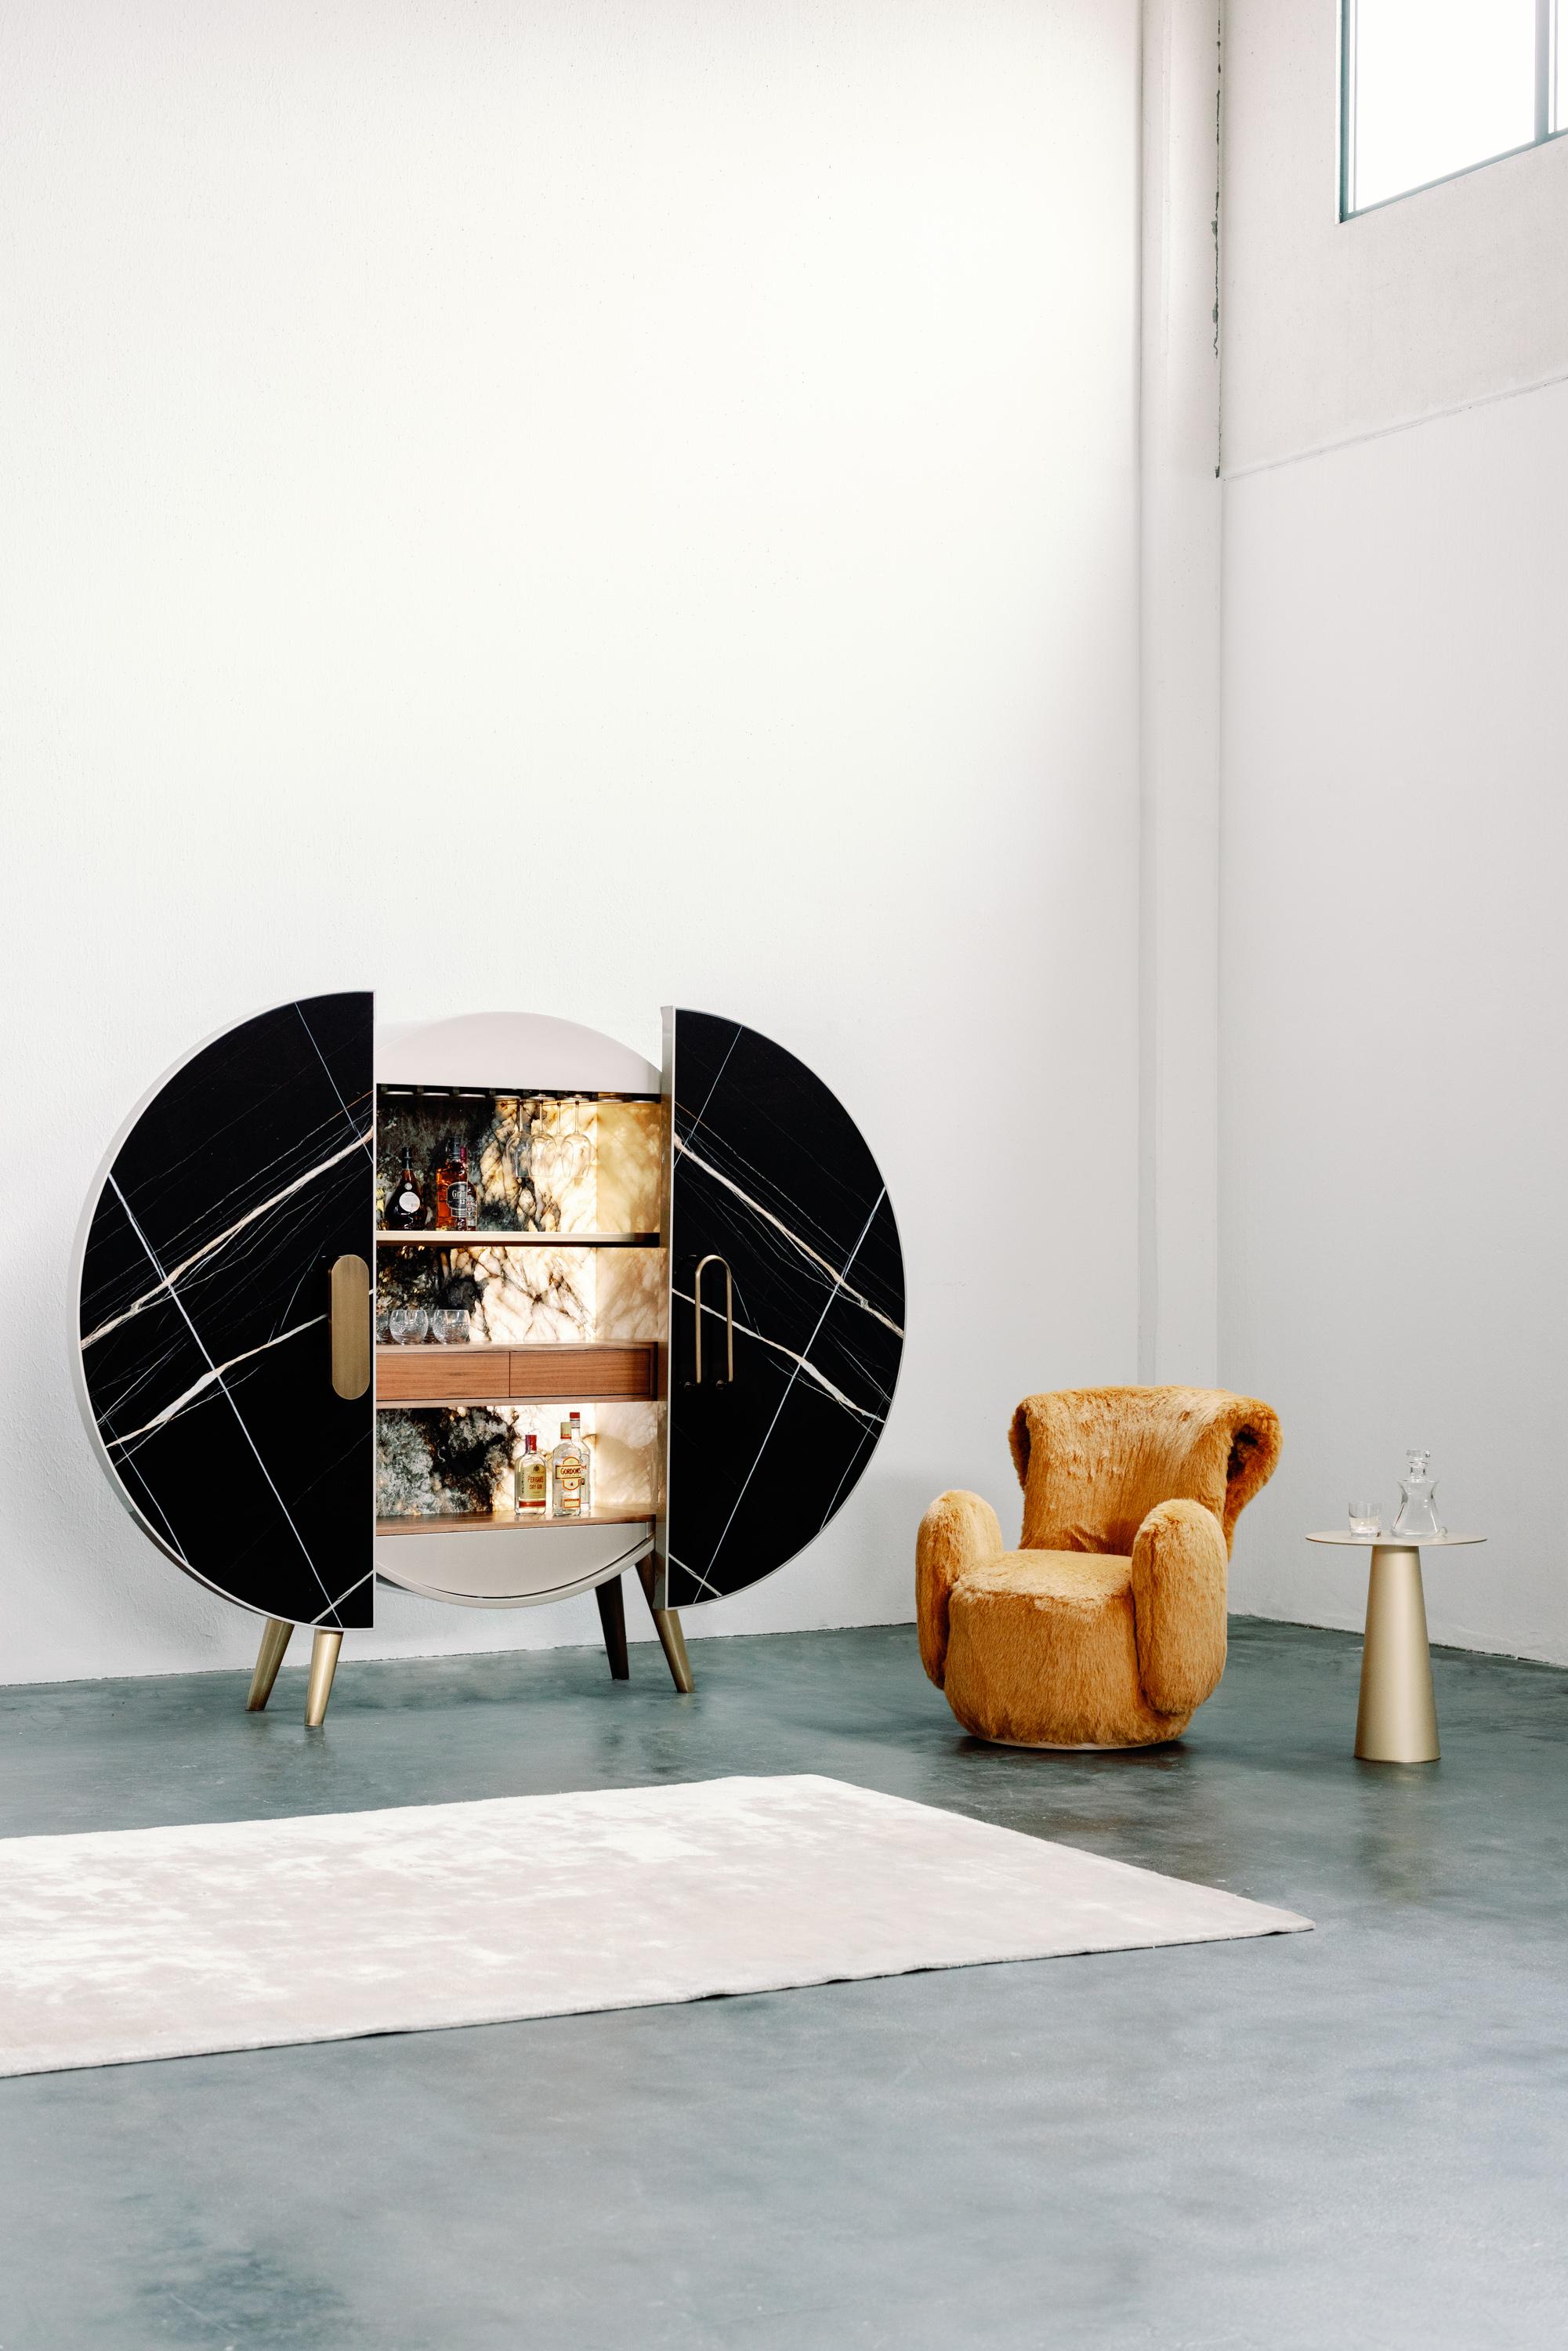 Fauteuil Grass, Collection Contemporary, Fabriqué à la main au Portugal - Europe par Greenapple.

Le fauteuil Grass tire sa forme de la goutte de rosée sur l'herbe, propre à la Nature, et promet un havre de paix pour les matins nuageux. L'artisanat